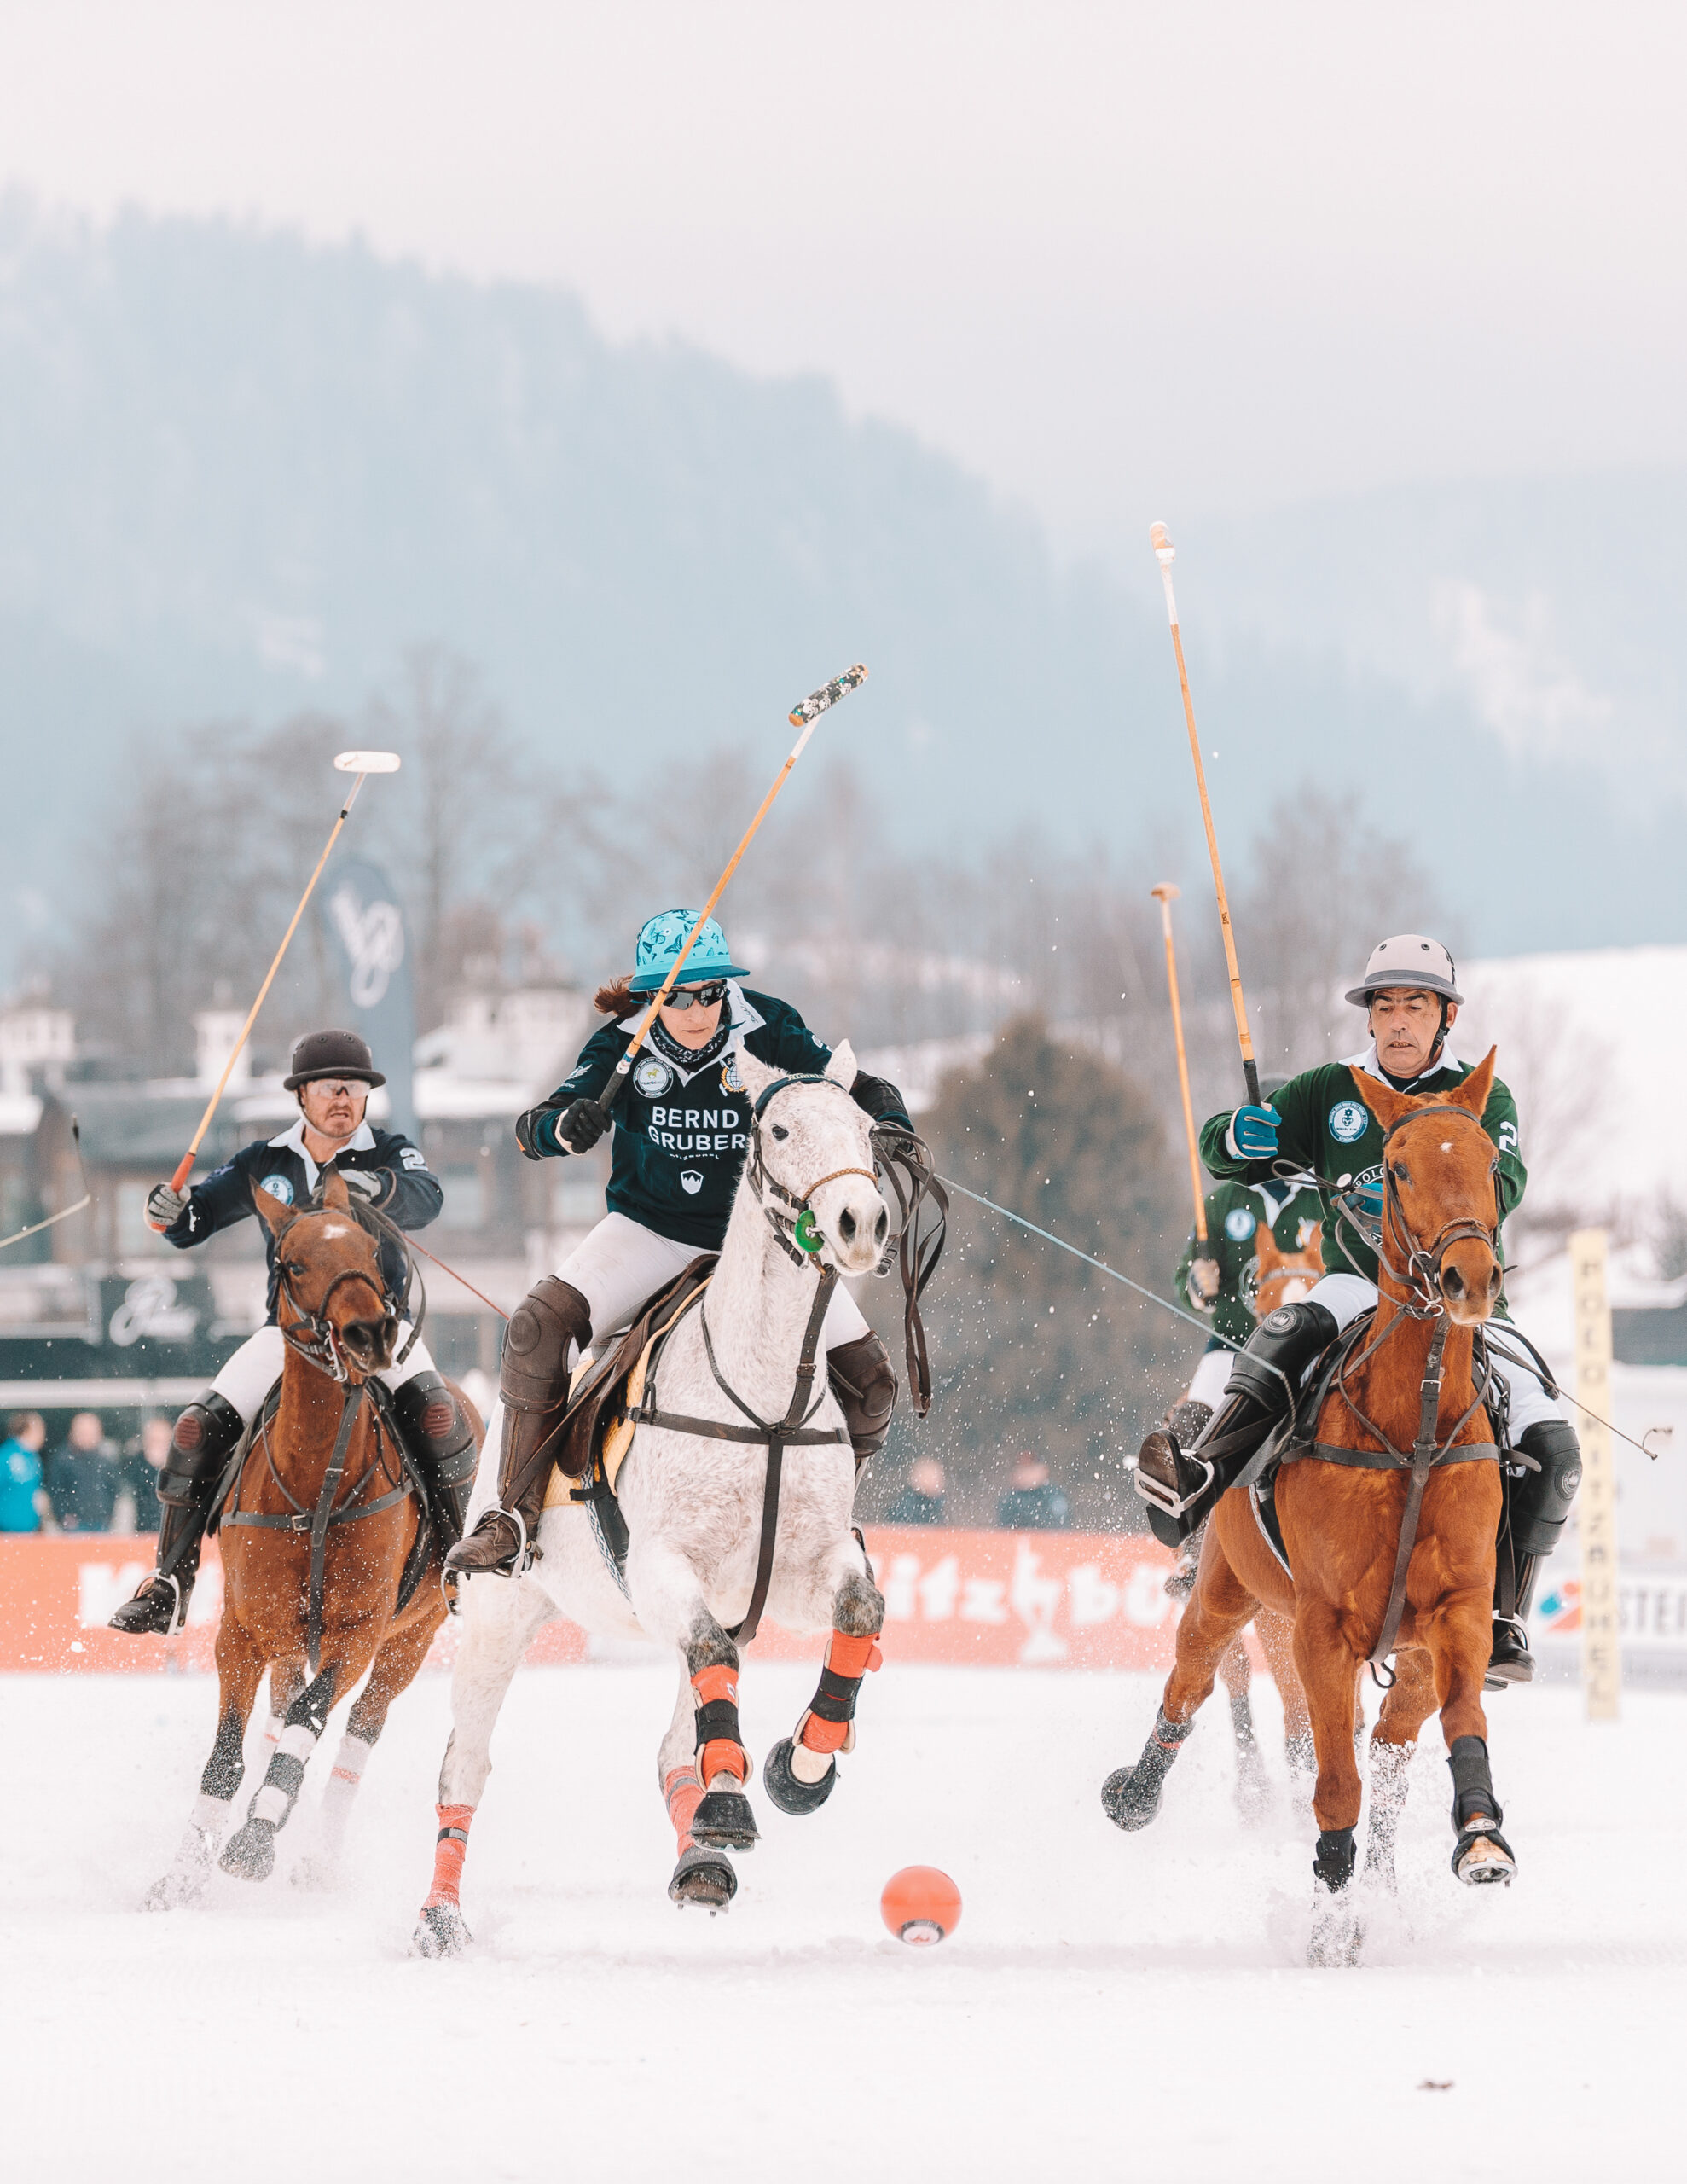 Snow Polo Tournaments Around the World